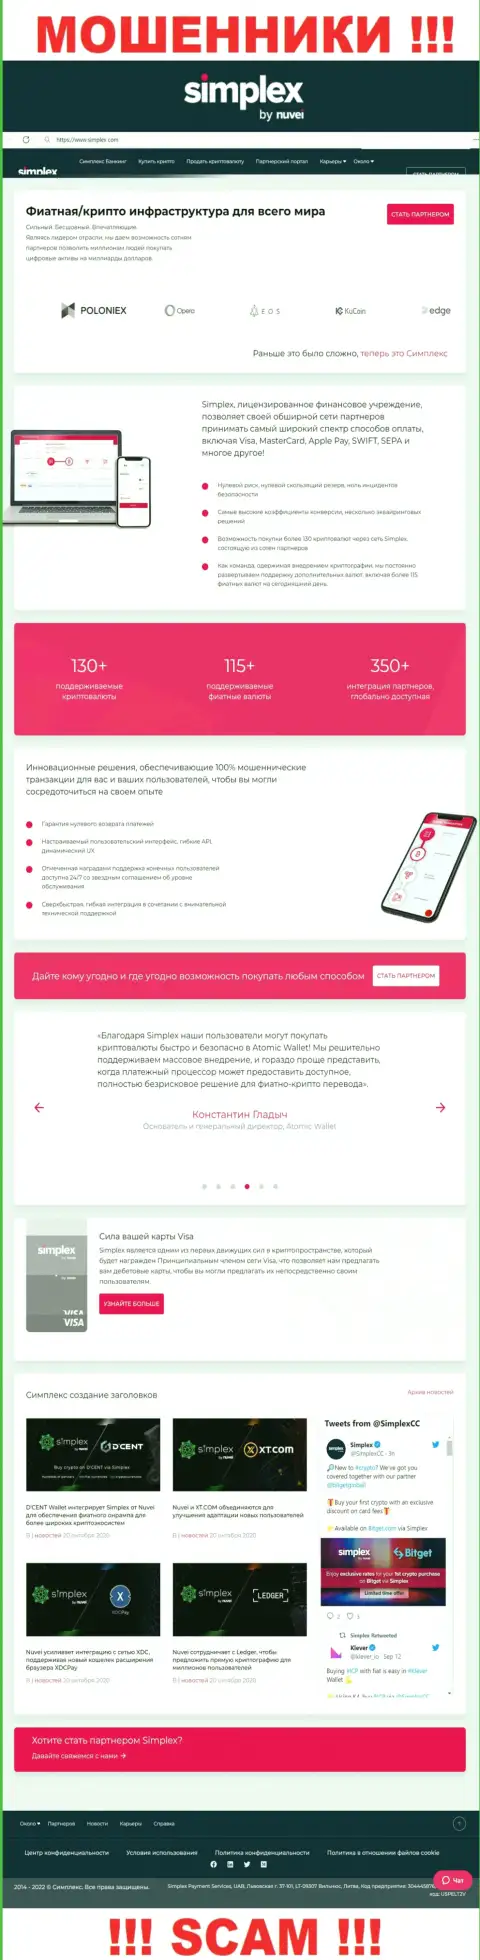 Вид официальной веб страницы жульнической компании Симплекс Ком